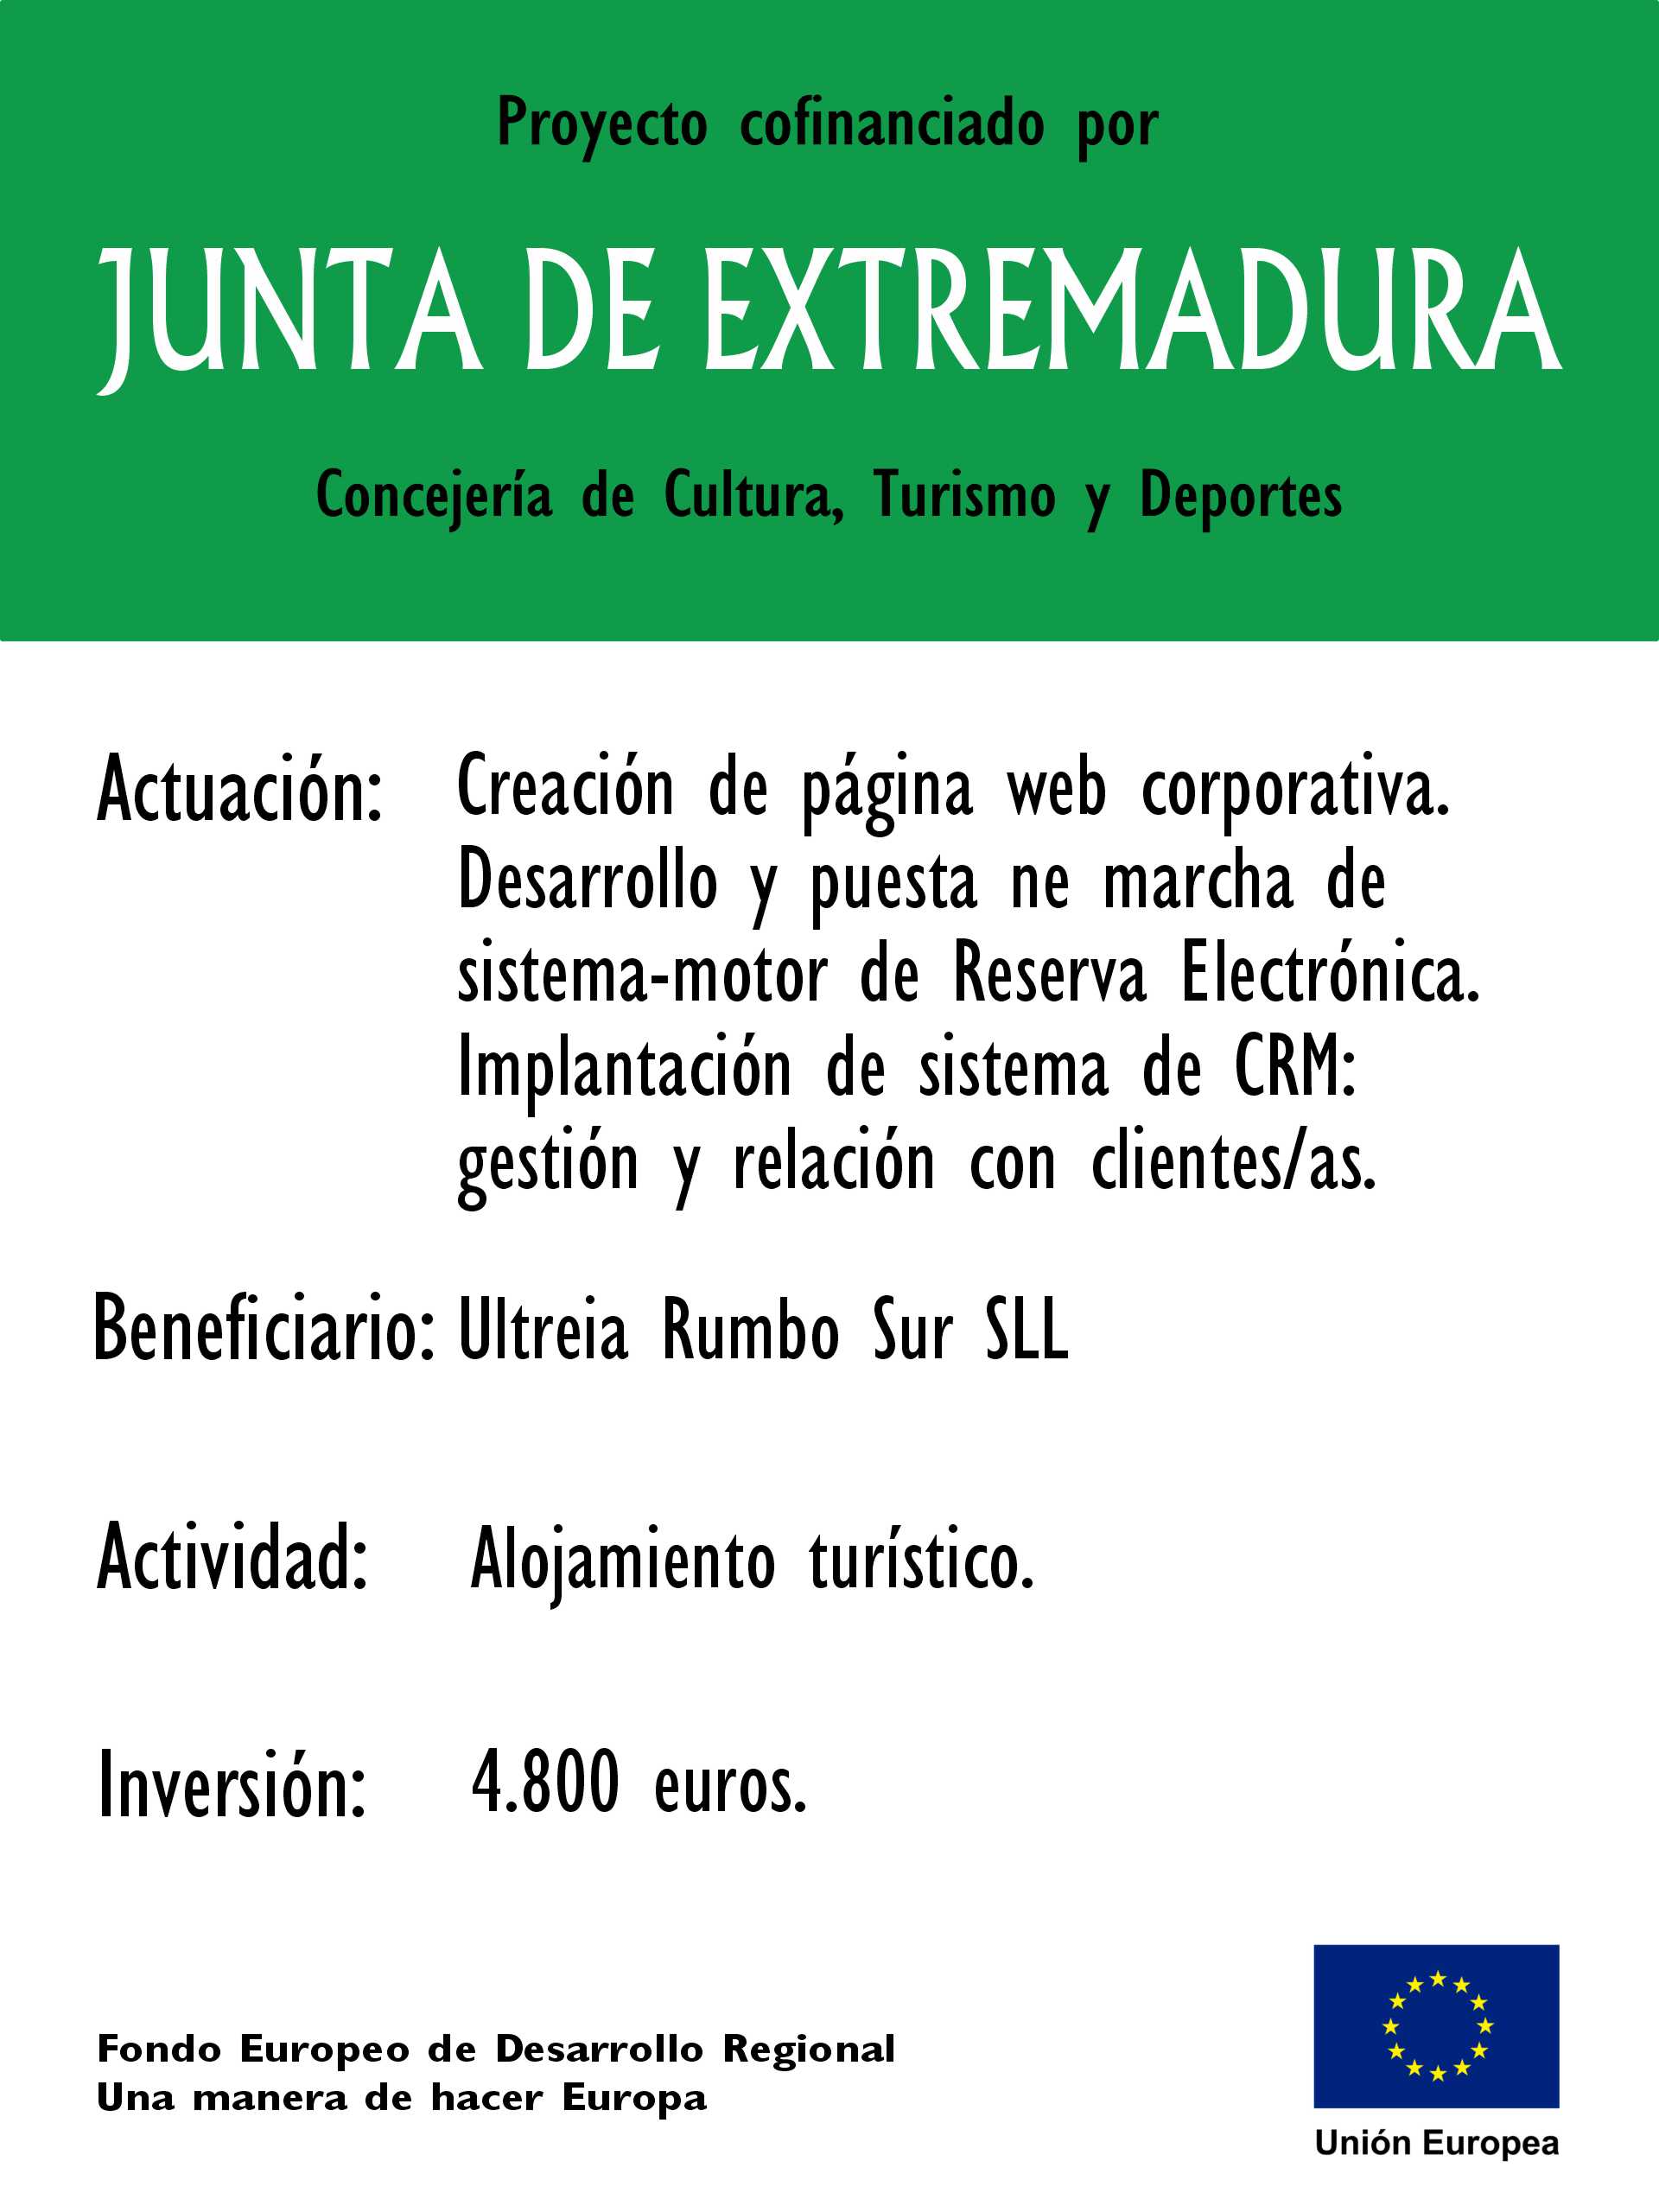 Proyecto Cofinanciado CR Junta de Extremadura 2023 TICs.